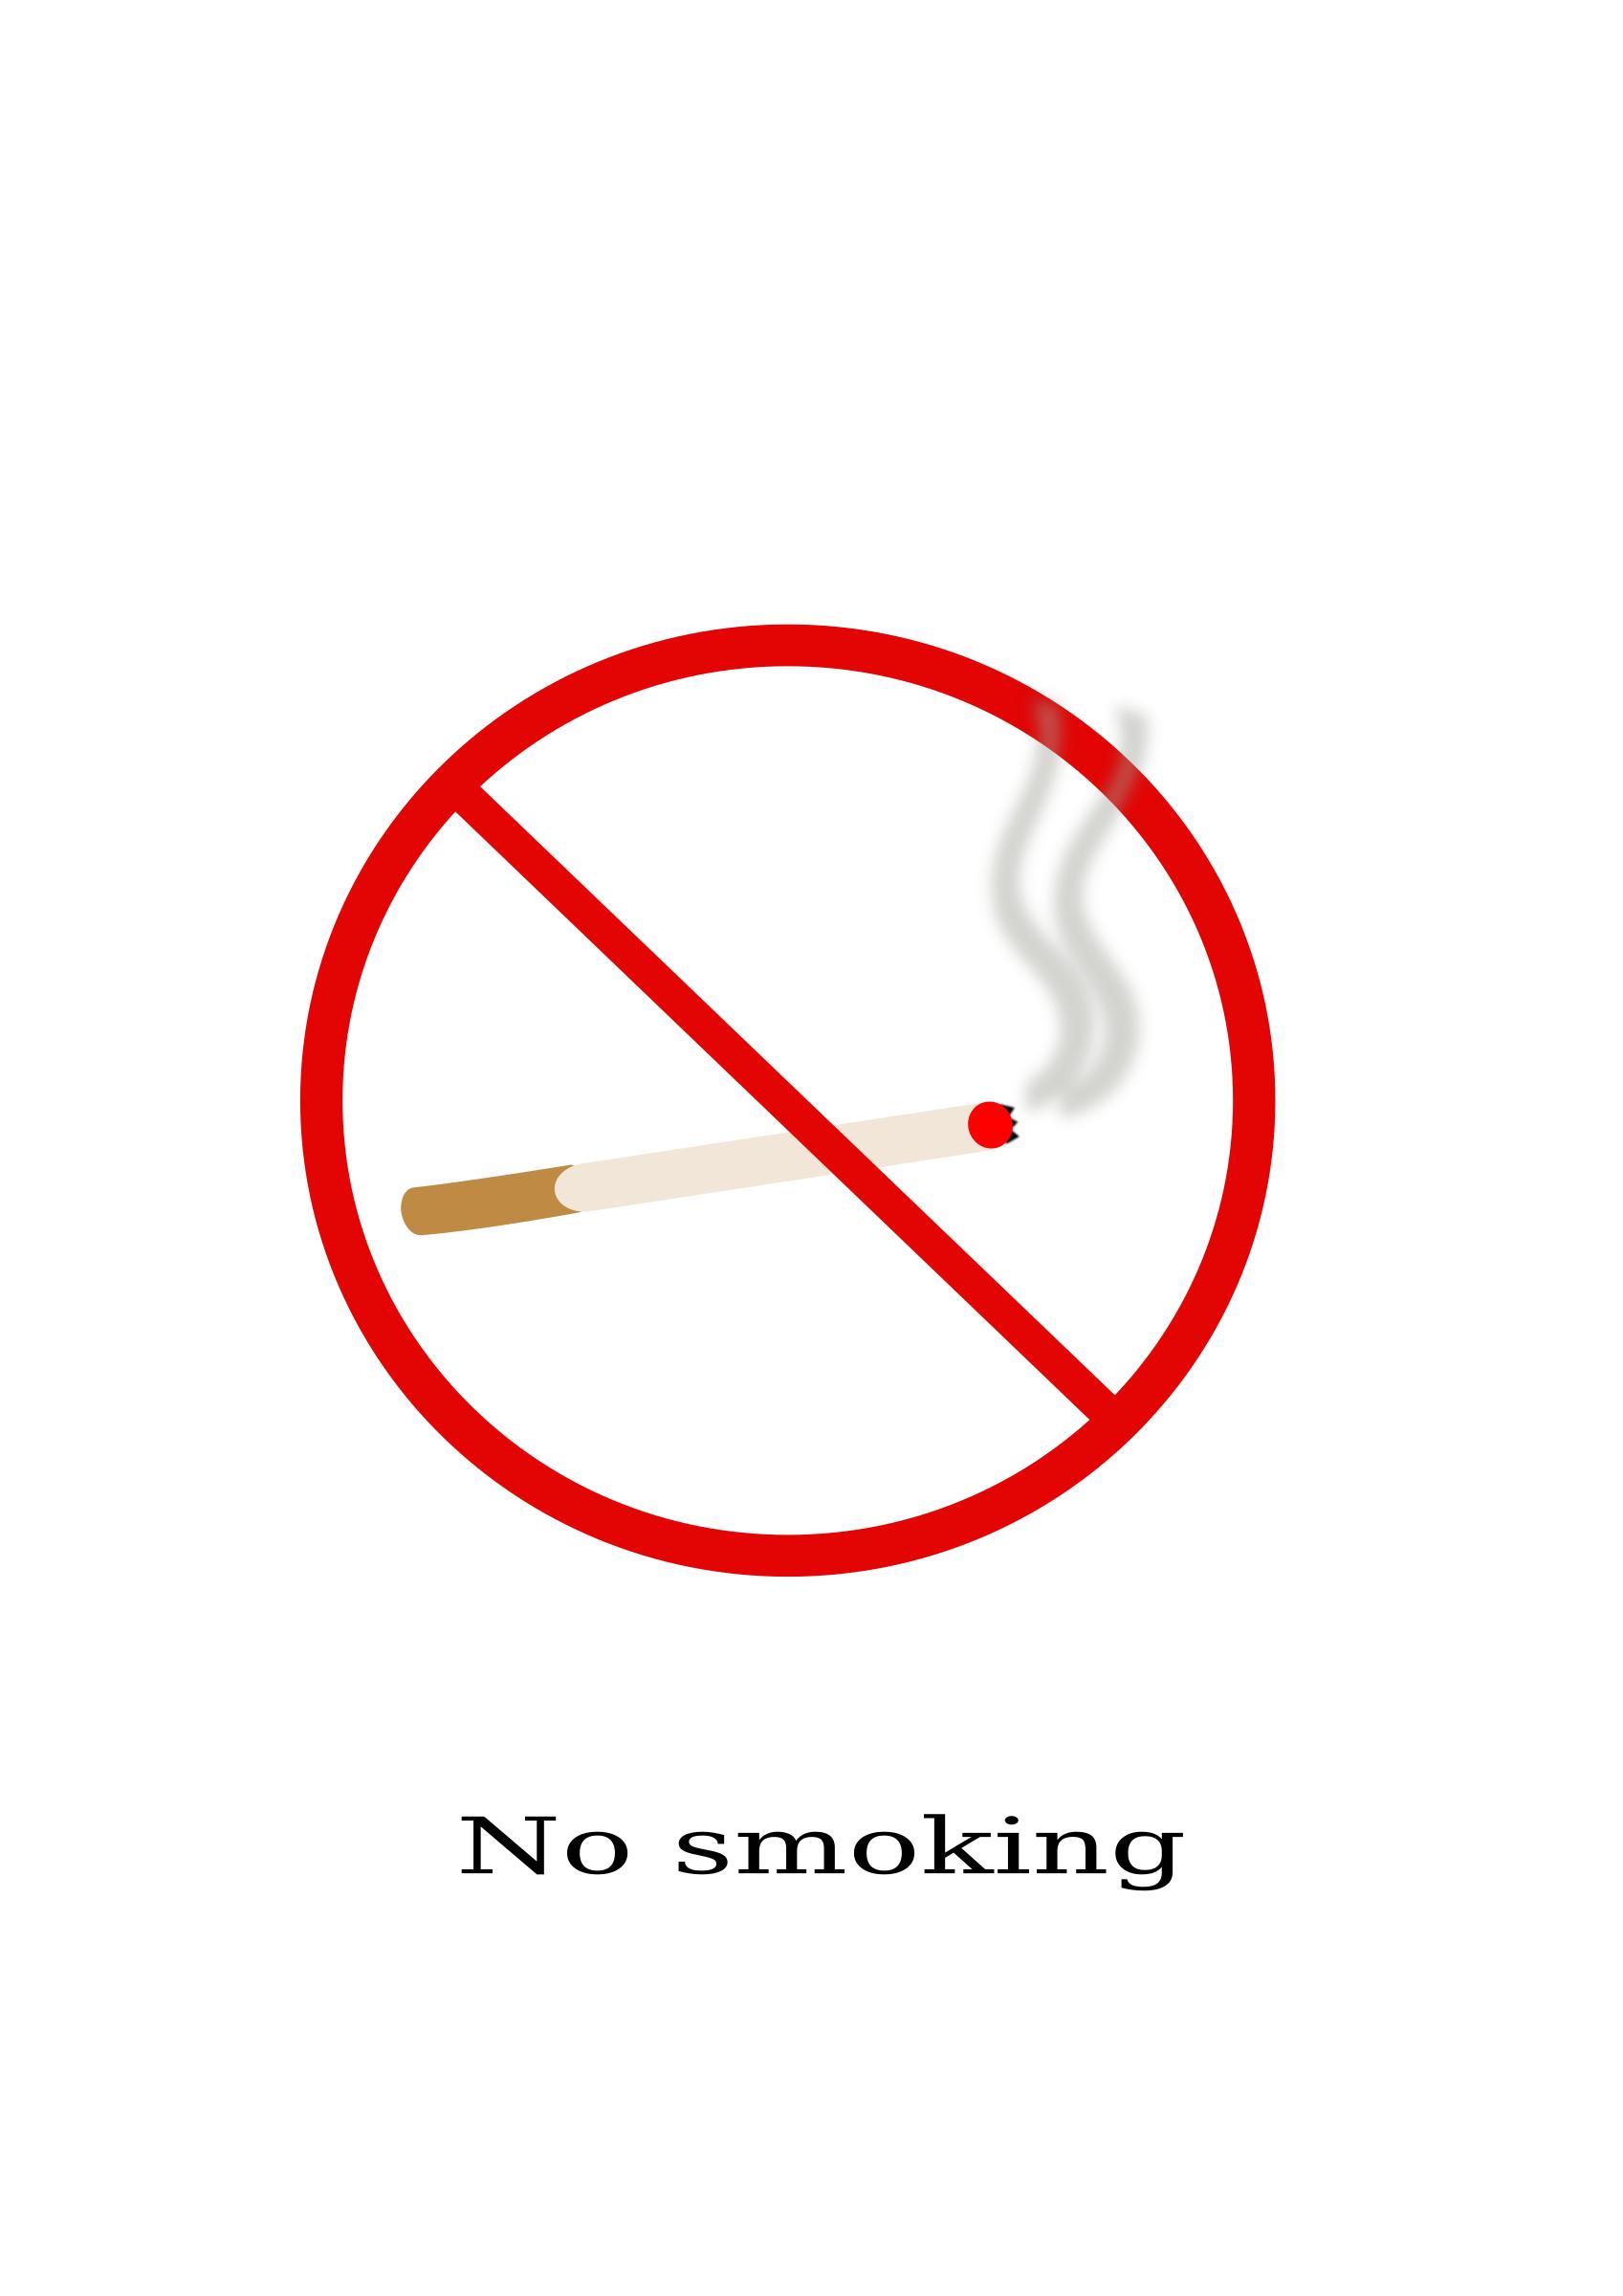 Warning sign - No smoking png